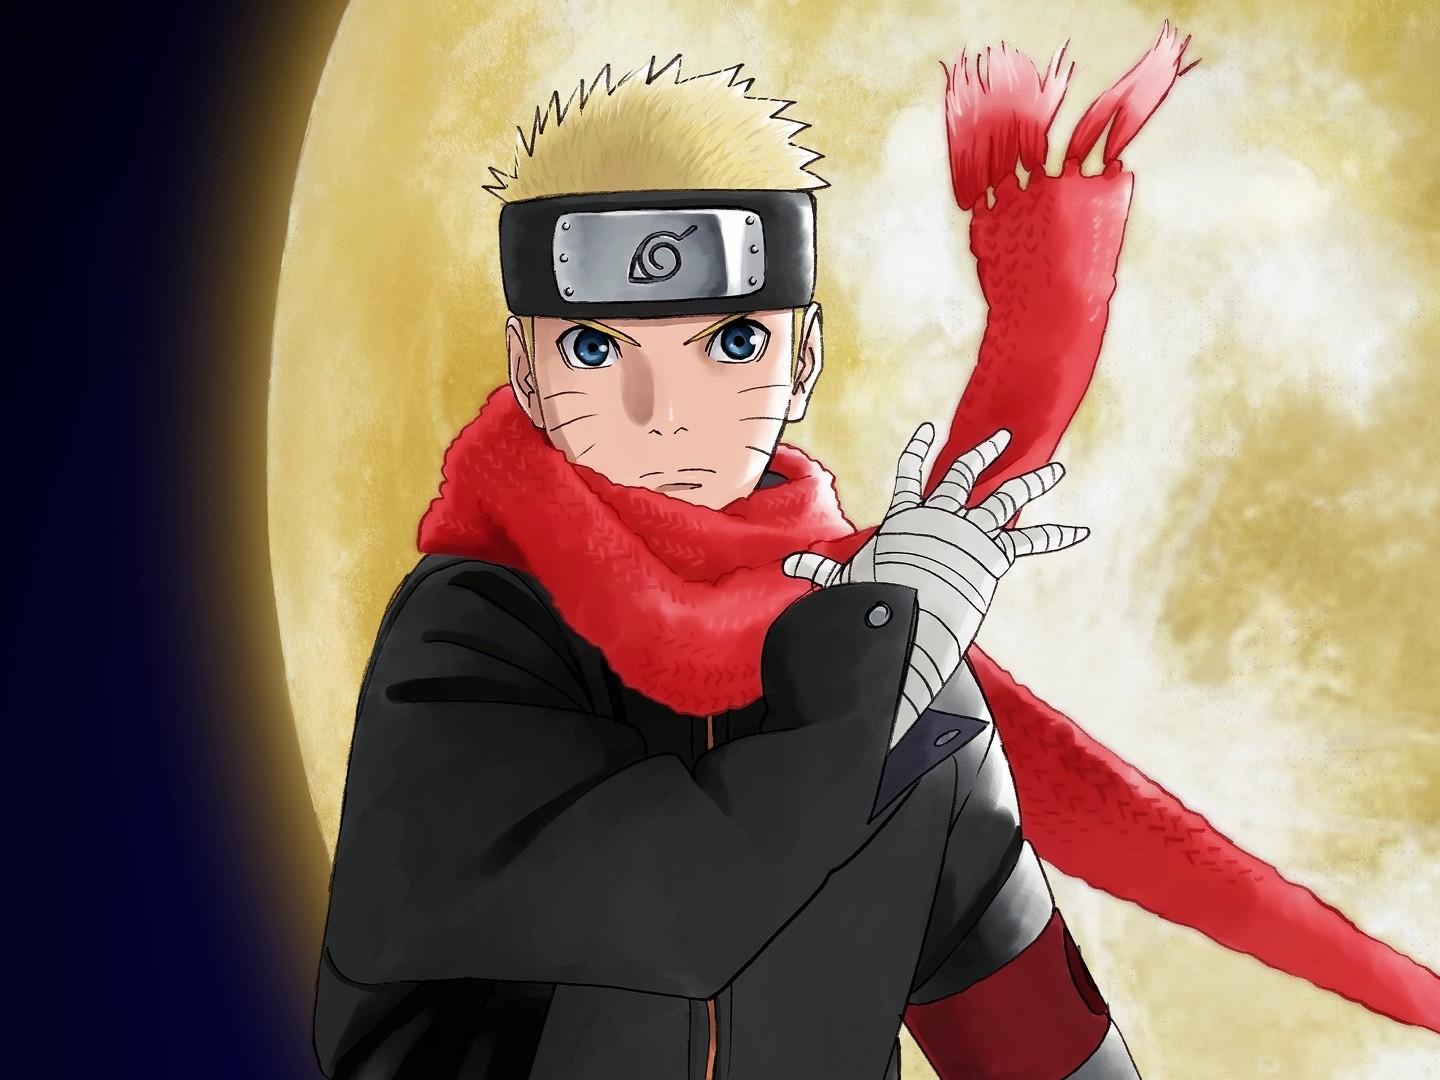 The Last: Naruto the Movie - Wikipedia